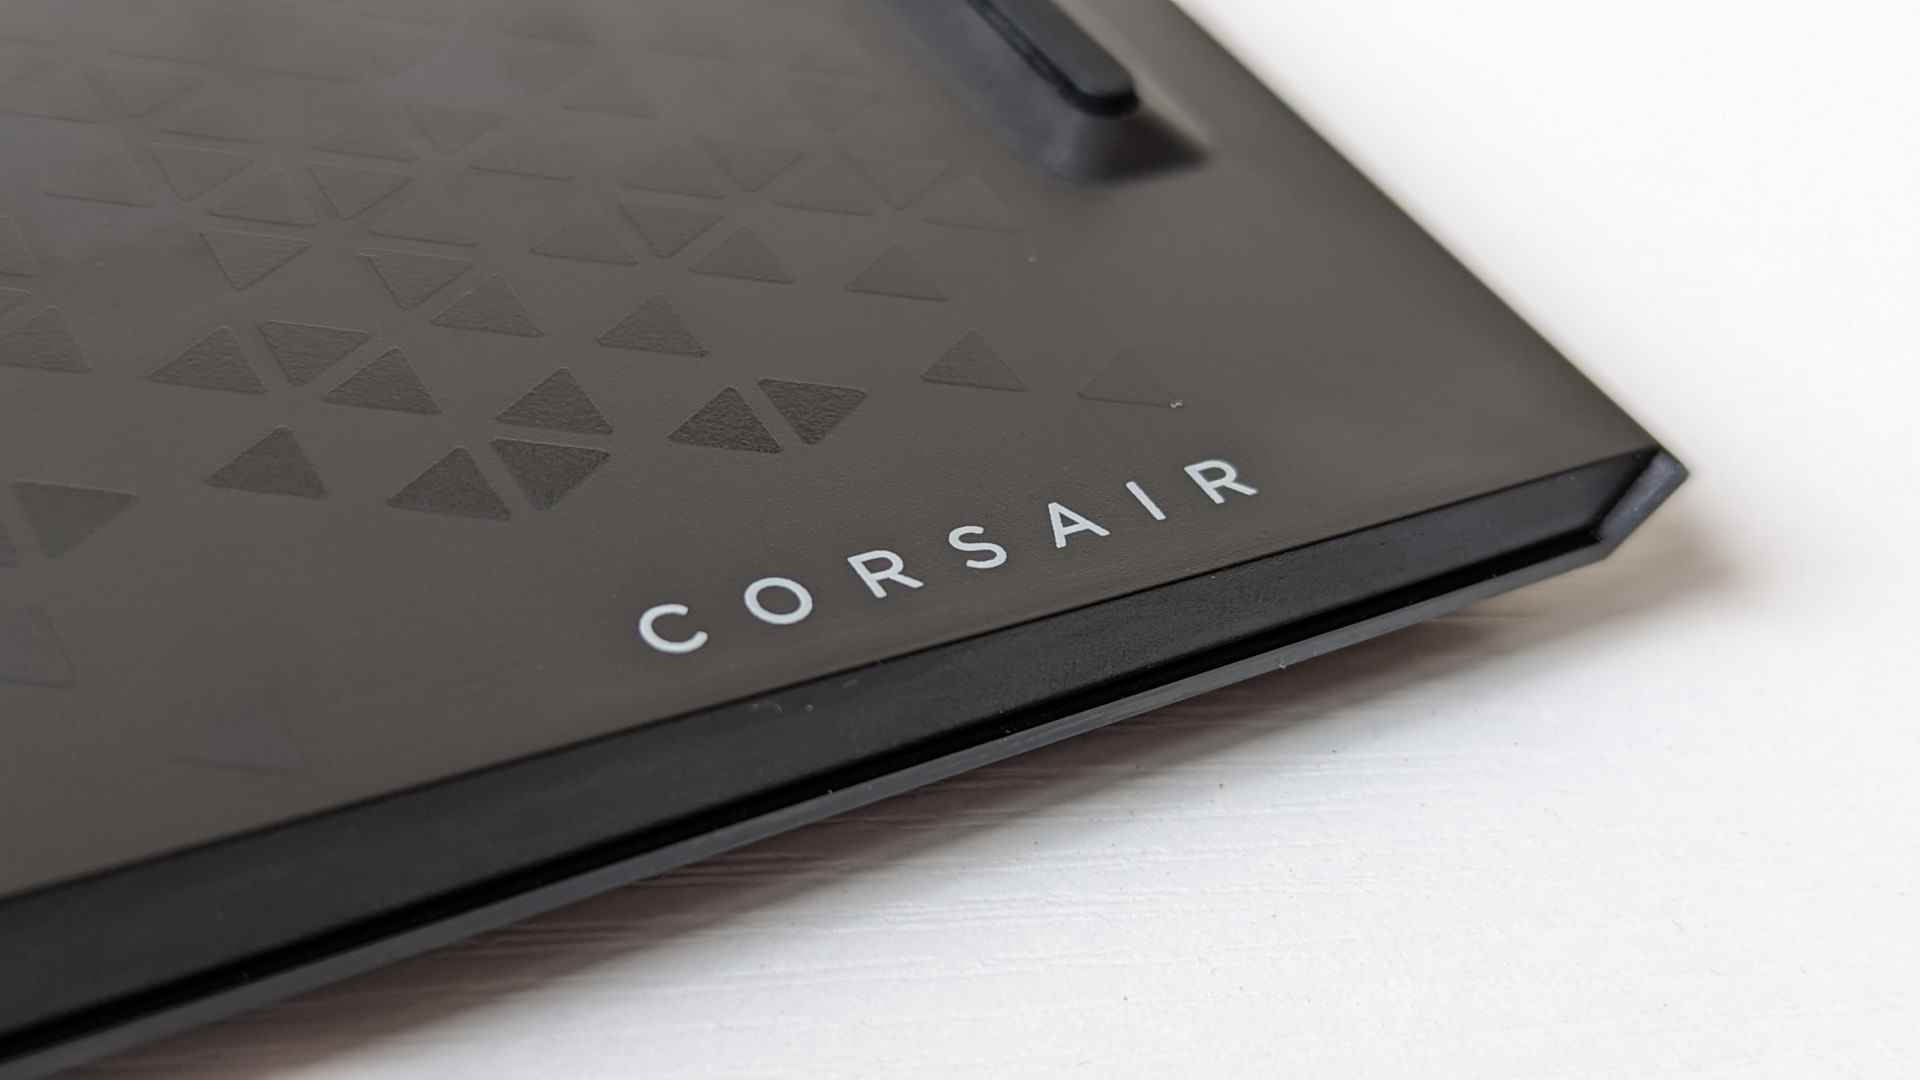 Le dessous du clavier gaming K100 Air, sur lequel est imprimé le logo Corsair